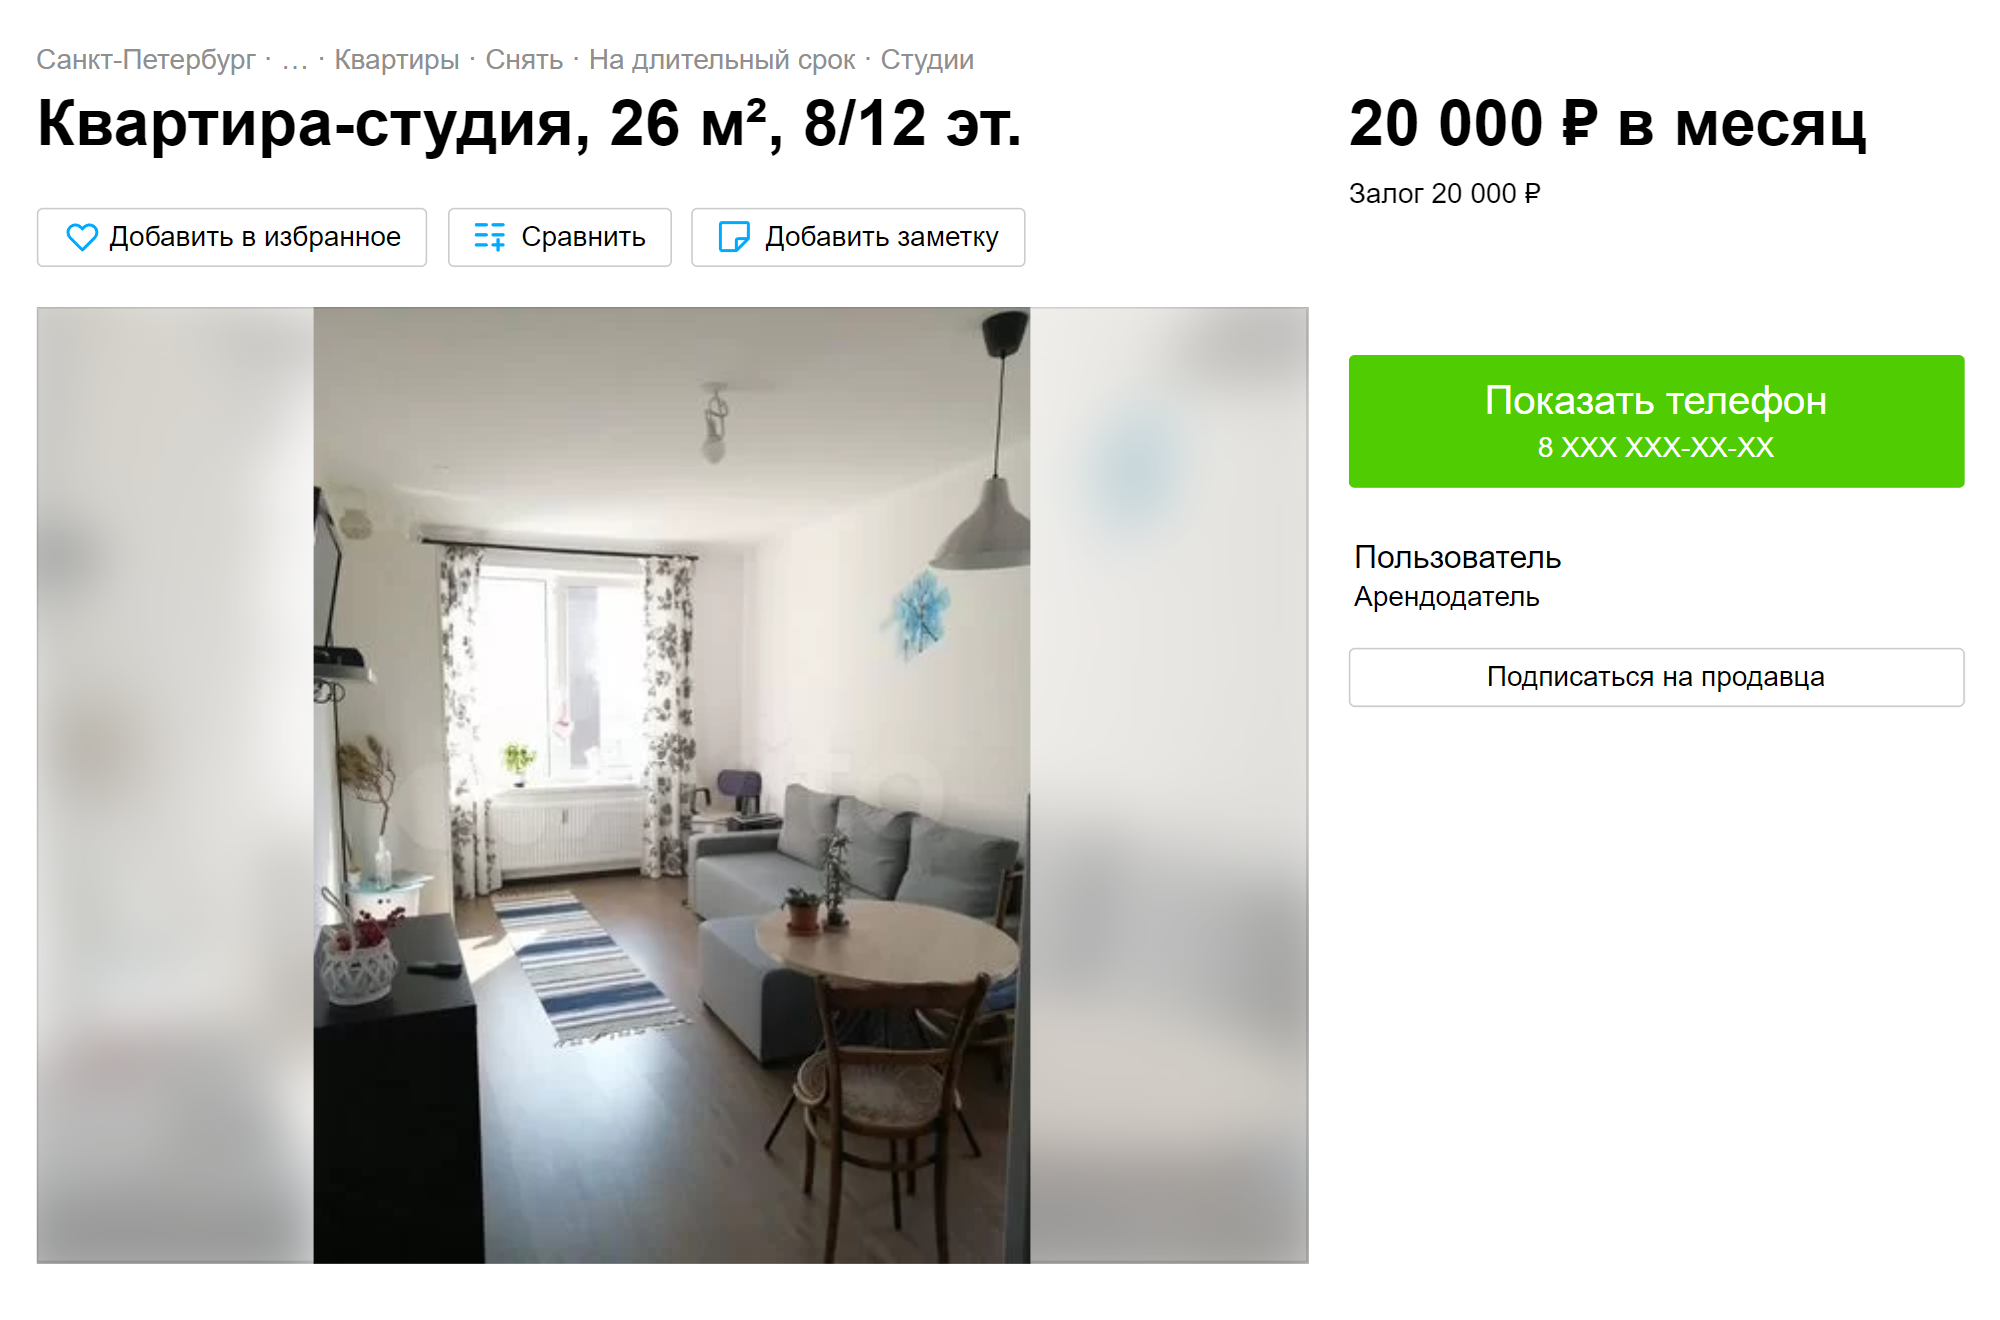 Квартиру-студию в новом доме в большом ЖК «Солнечный город» можно снять за 20 000 ₽. Источник: avito.ru